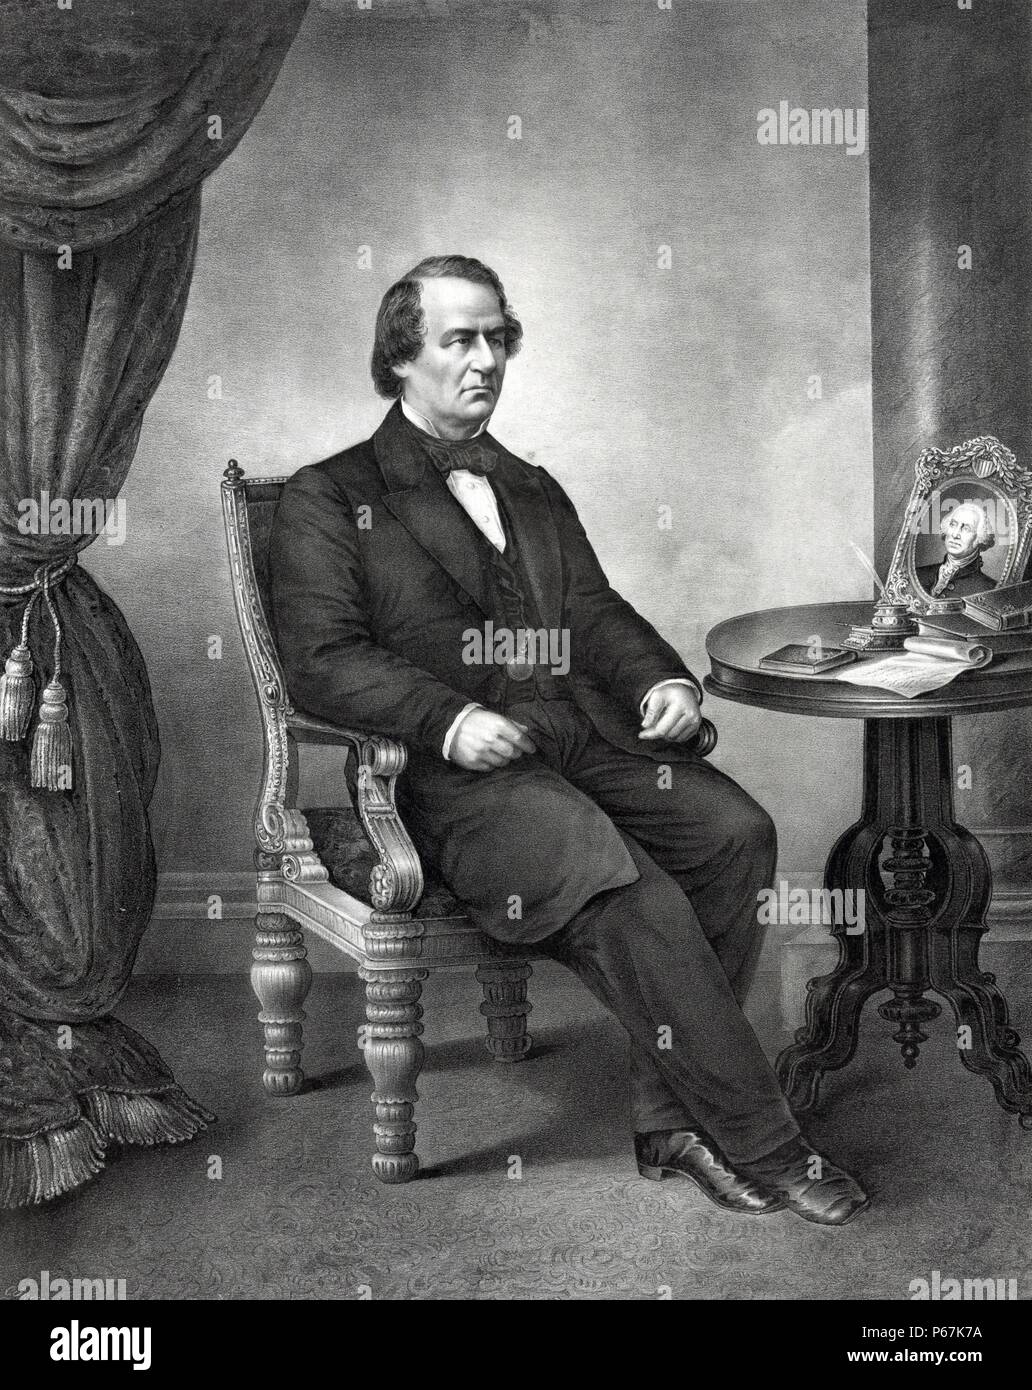 Le président Andrew Johnson. Johnson a été le 17e président des États-Unis, de 1865 à 1869. Il est devenu président en tant que Vice-président Abraham Lincoln au moment de l'assassinat de Lincoln. Banque D'Images